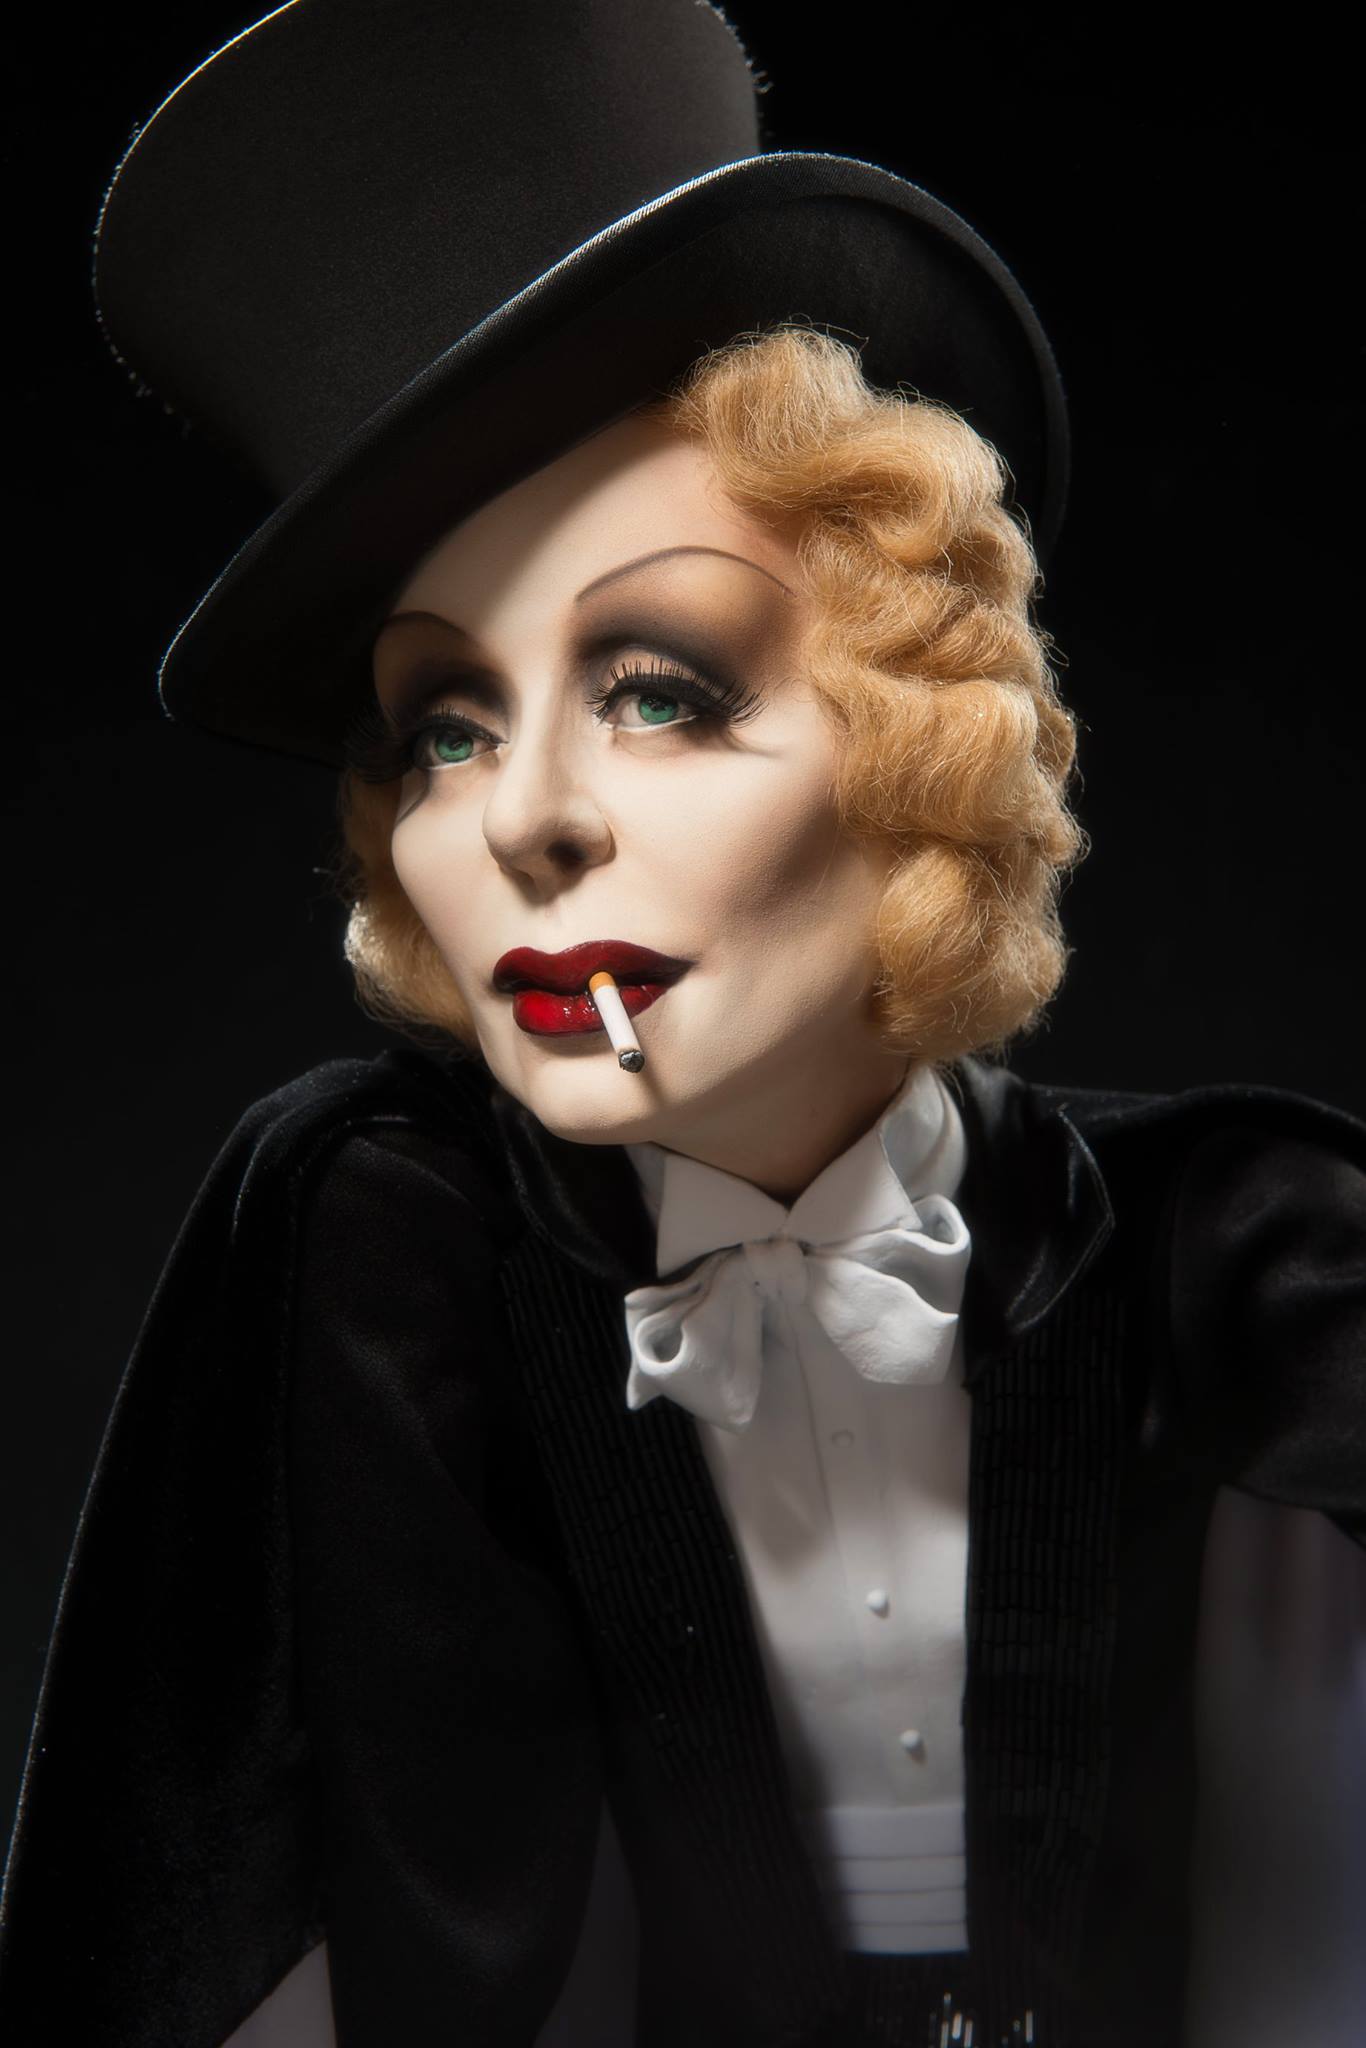 Dustin Poche – Marlene Dietrich doll sculpture